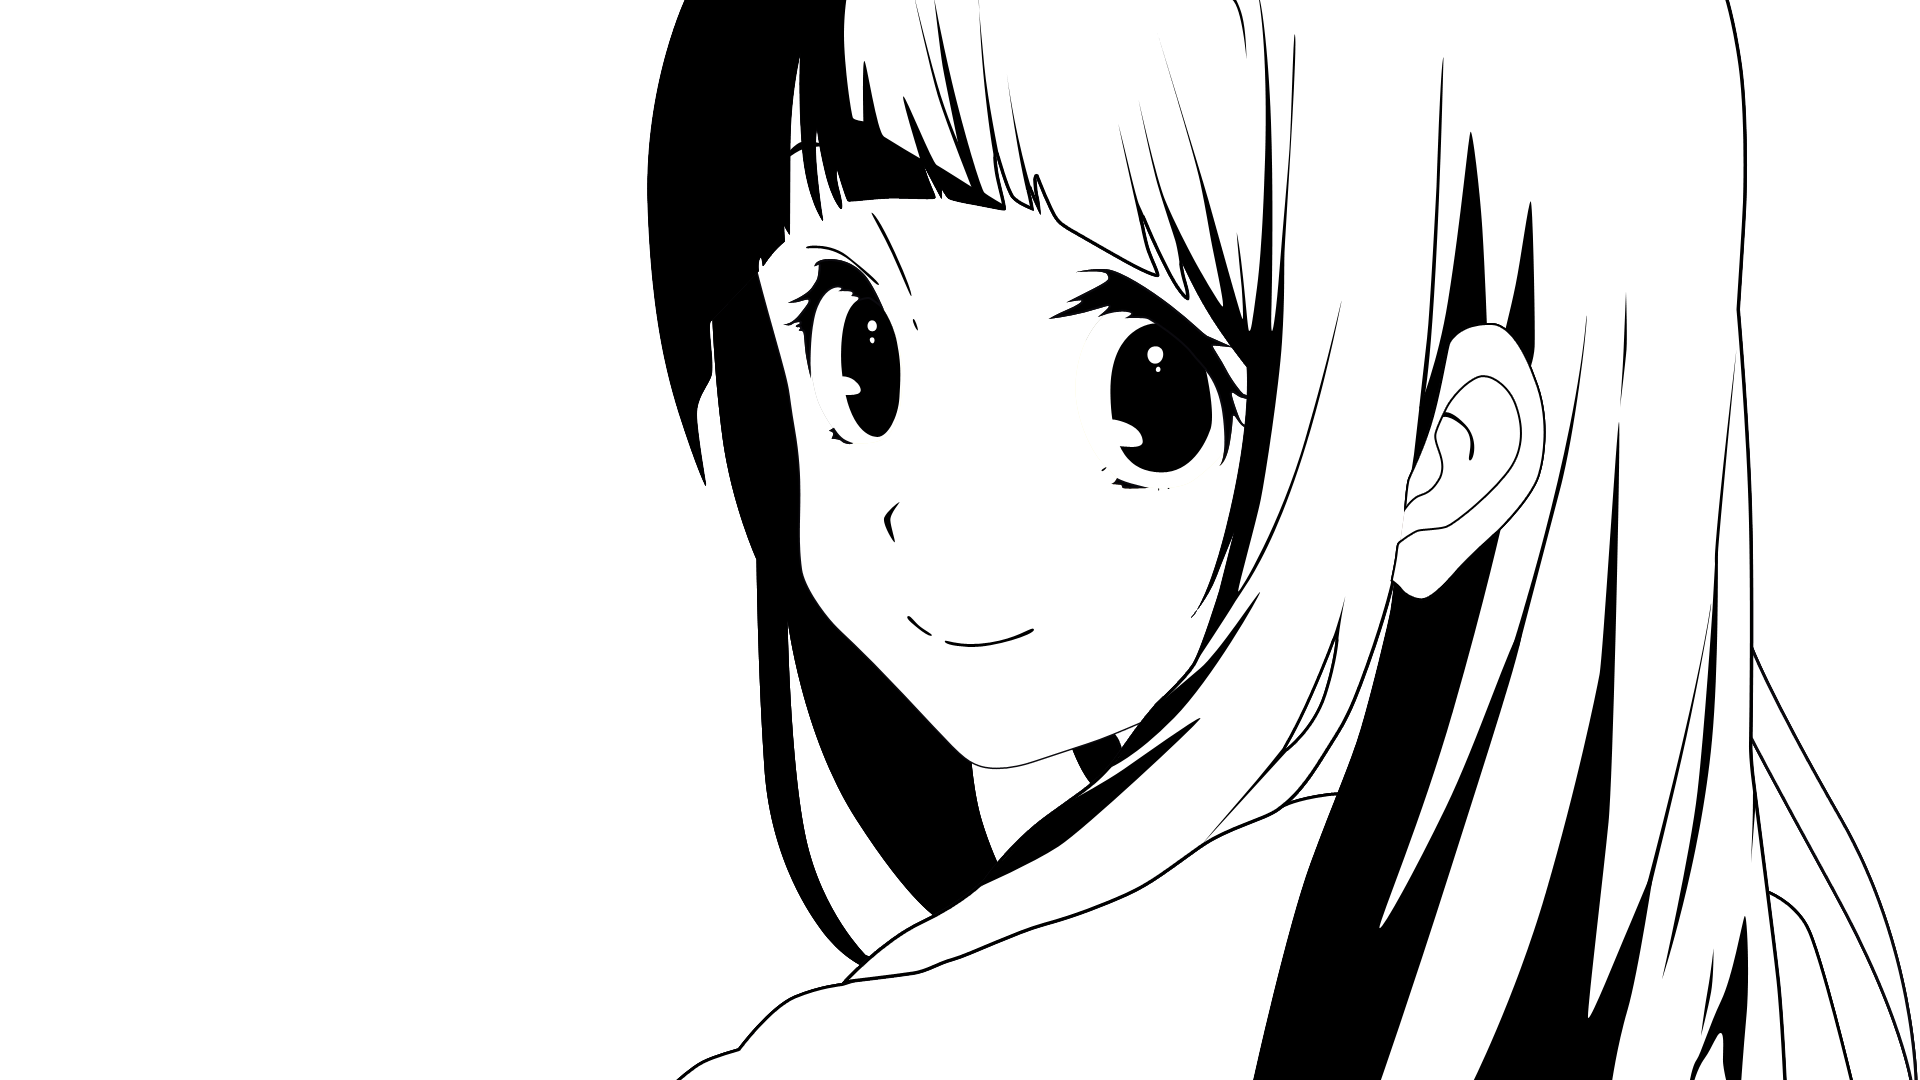 Hình ảnh Anime đen trắng đơn giản